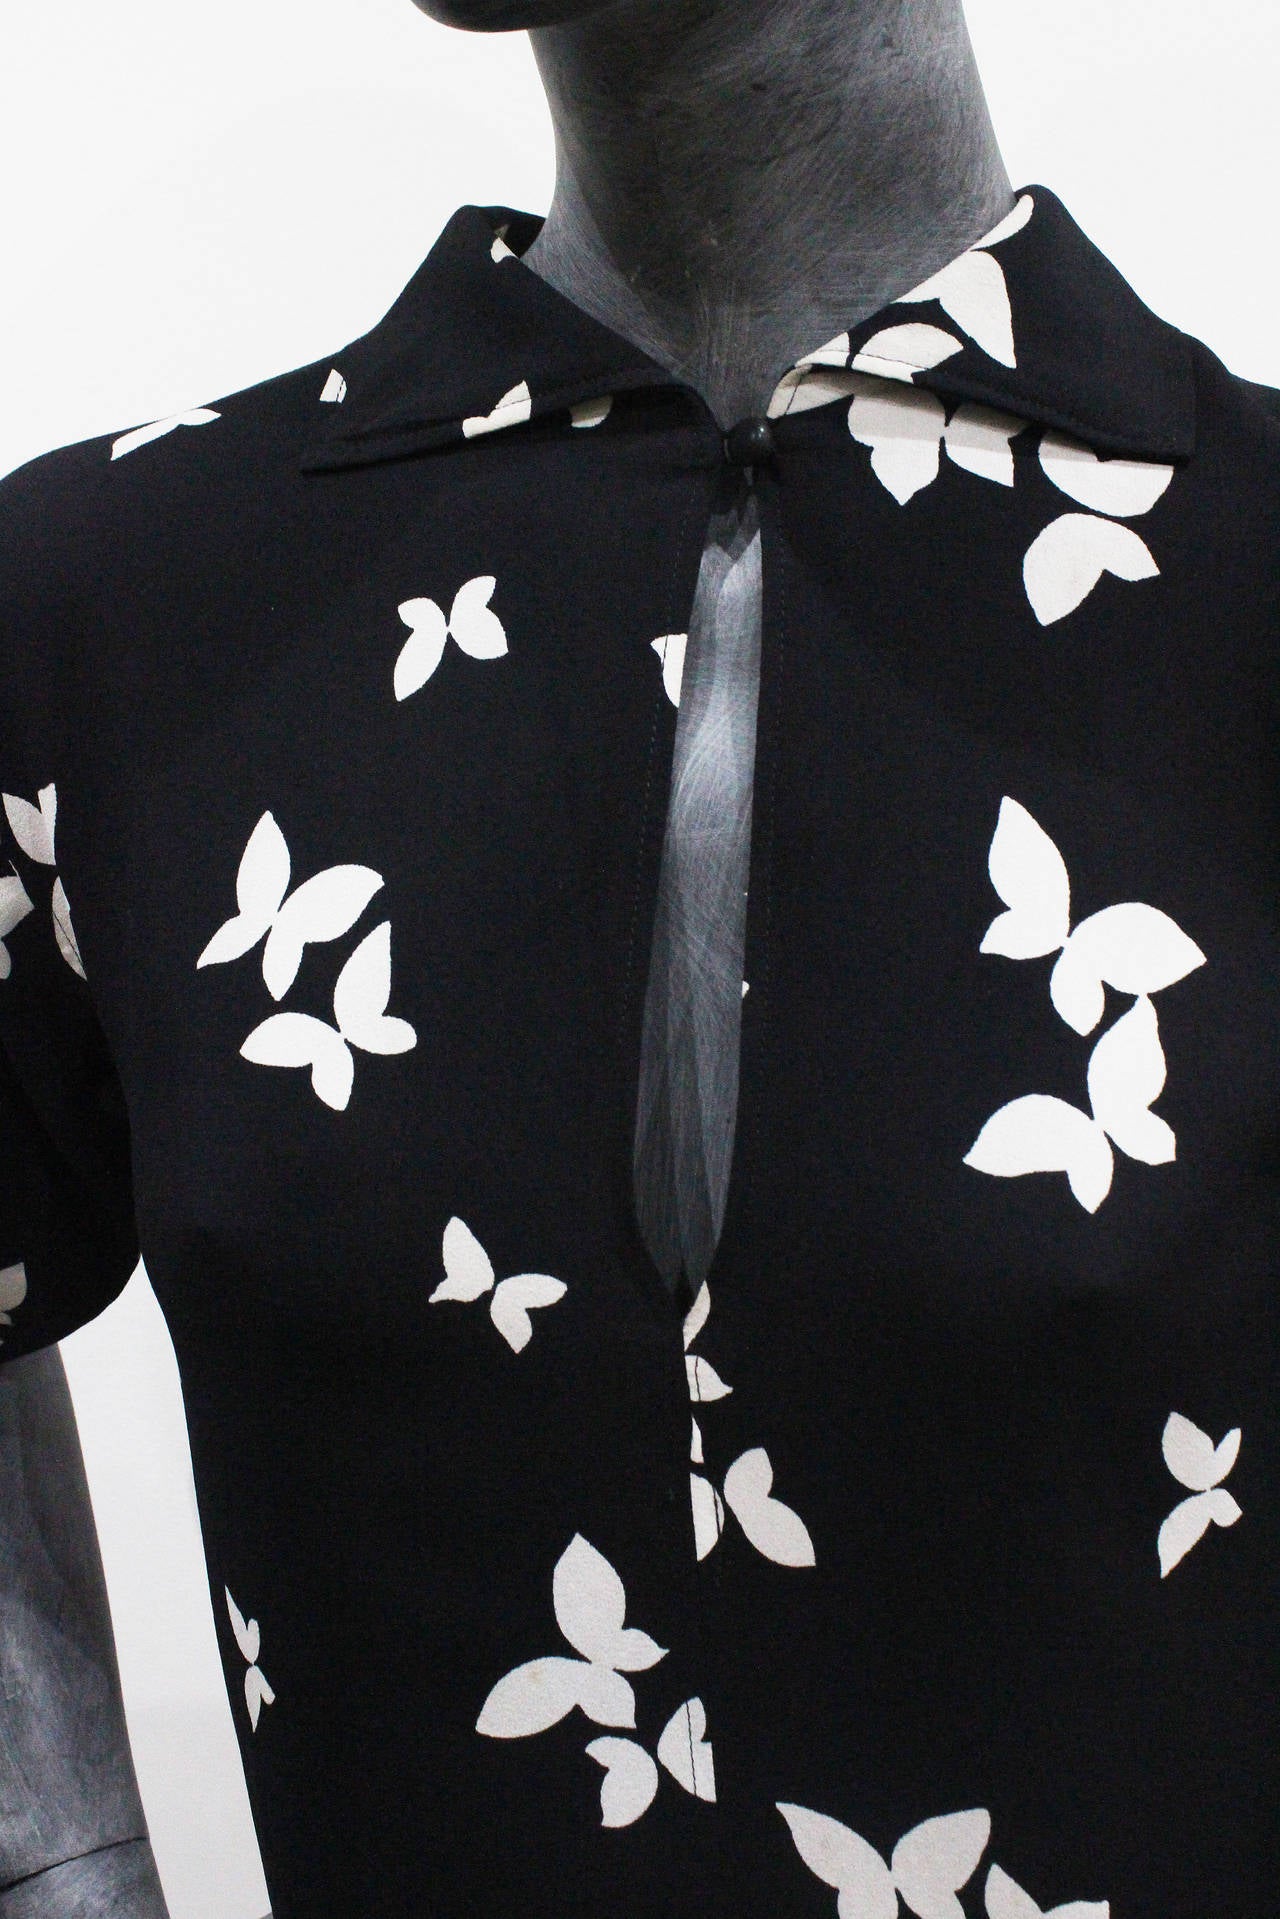 Women's Rare Documented Yves Saint Laurent Butterfly Dress, Spring/Summer 1978